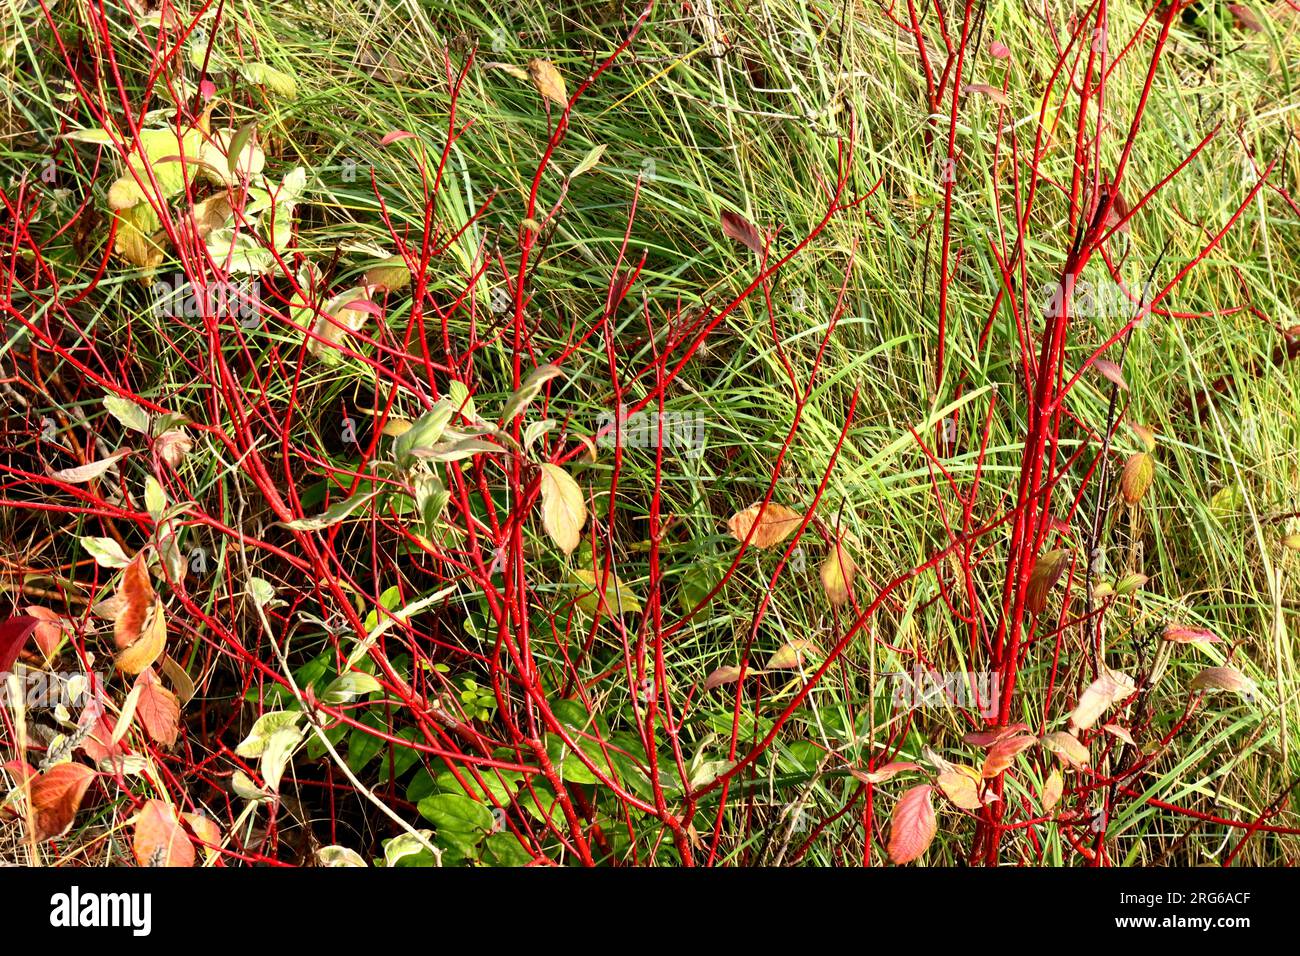 Kräftige rote Zweige und Stämme aus Hundelholz wachsen wild und setzen sich auf langes grünes Gras und verwesende Blätter. Stockfoto